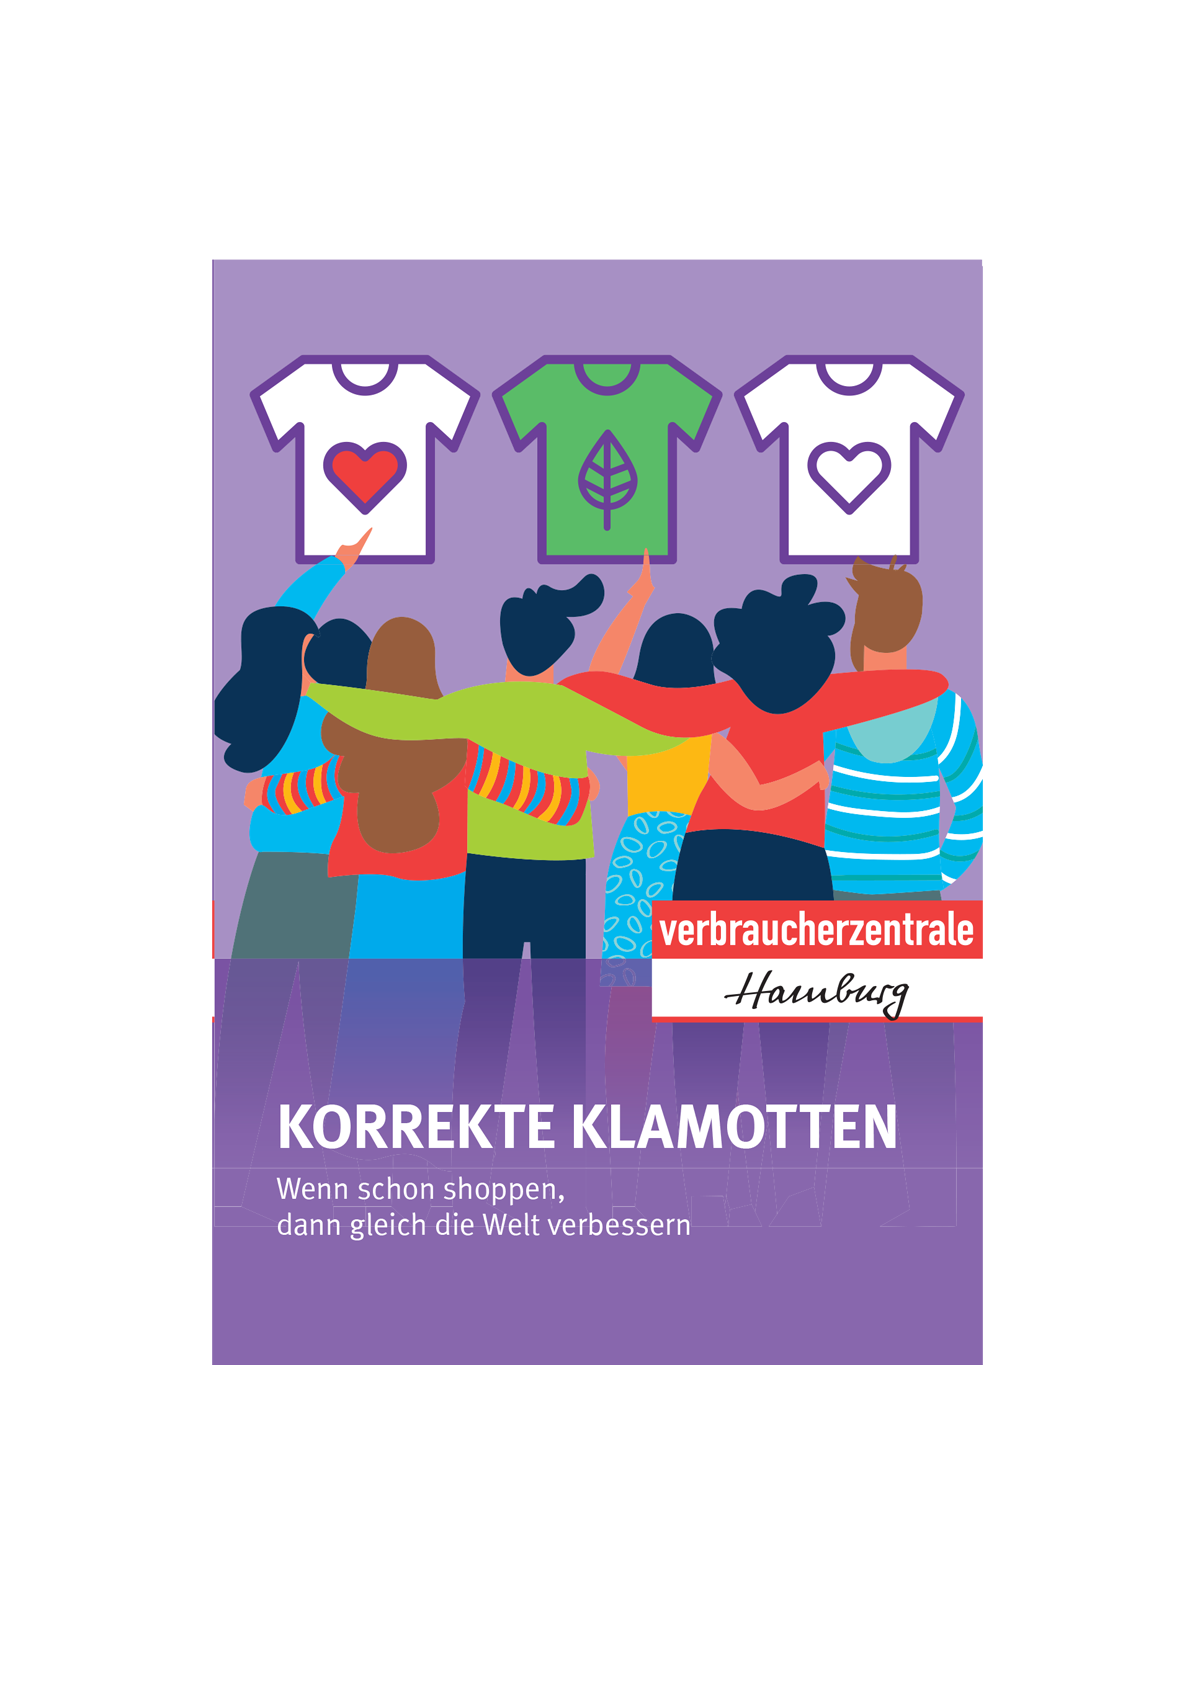 Kleidung: Mini-Broschüre Korrekte Klamotten der Verbraucherzentrale Hamburg